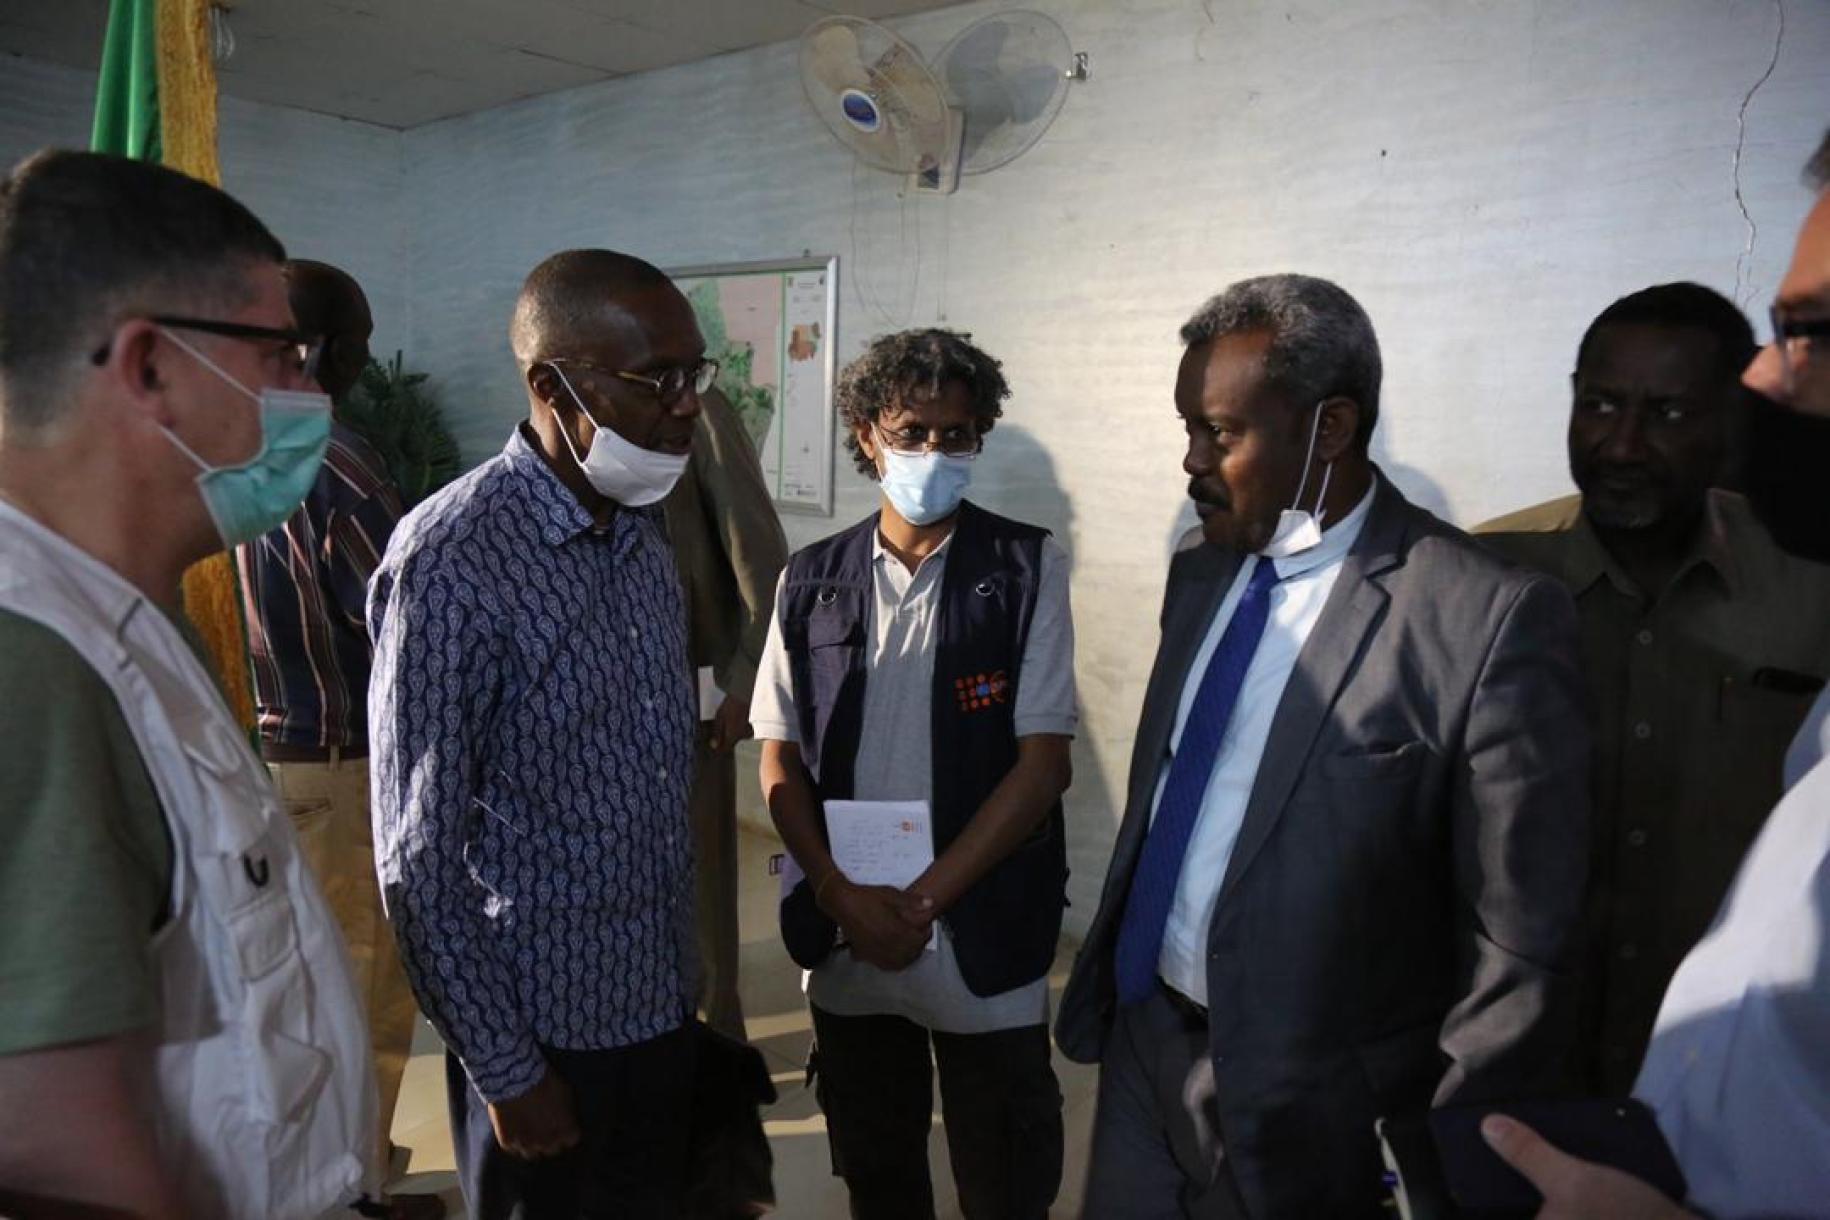 المنسق المقيم للأمم المتحدة في السودان بابكر سيسي إلى جانب موظفي الأمم المتحدة وقائد الفريق الأمني للمخيم.